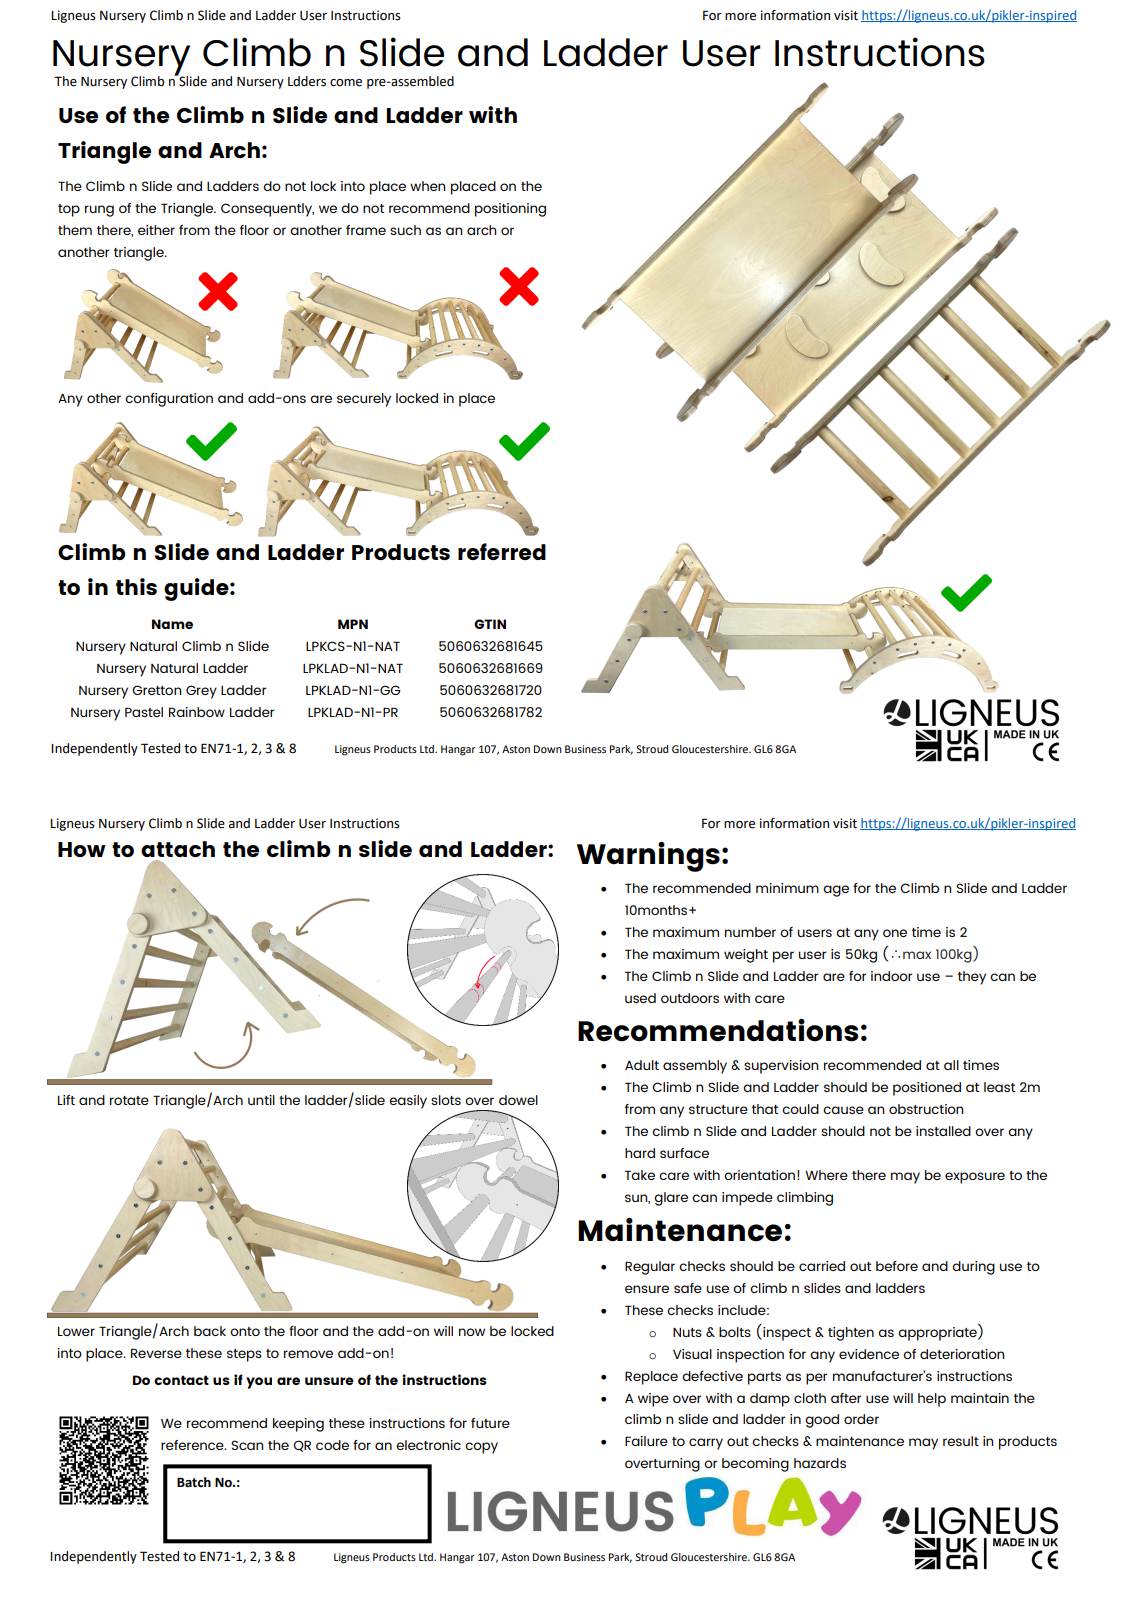 Nursery Slide & Ladder User Guide